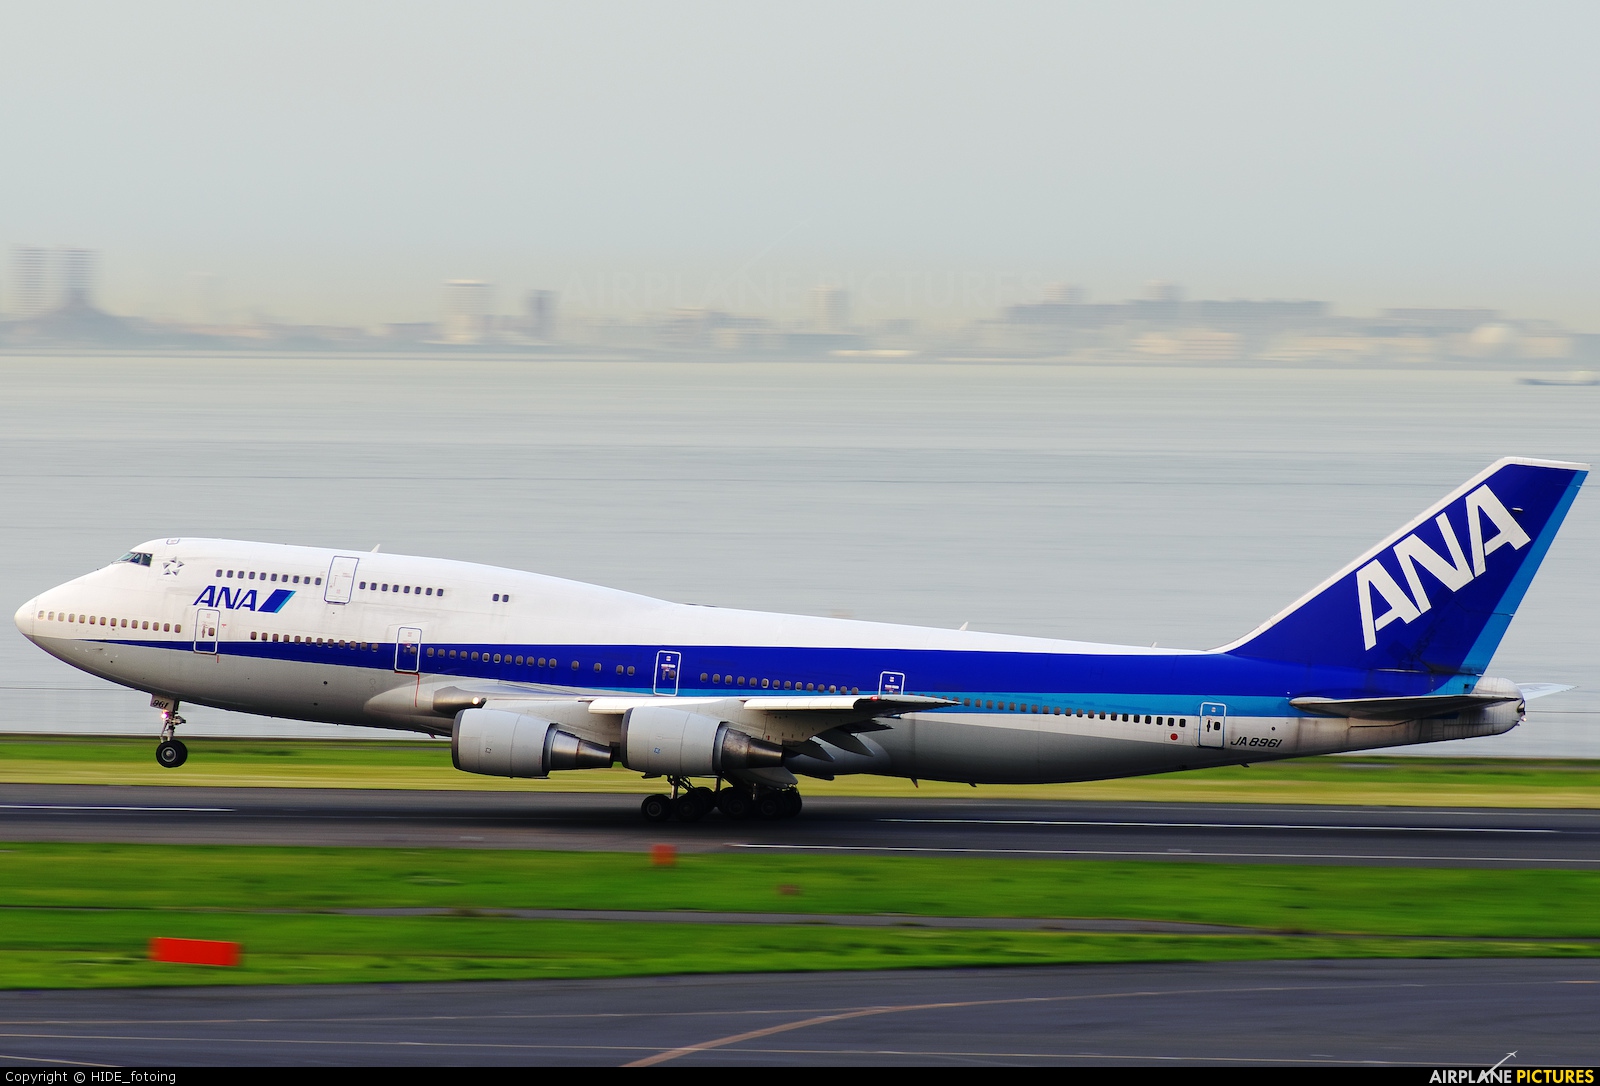 JA8961 - ANA - All Nippon Airways Boeing 747-400D at Tokyo 